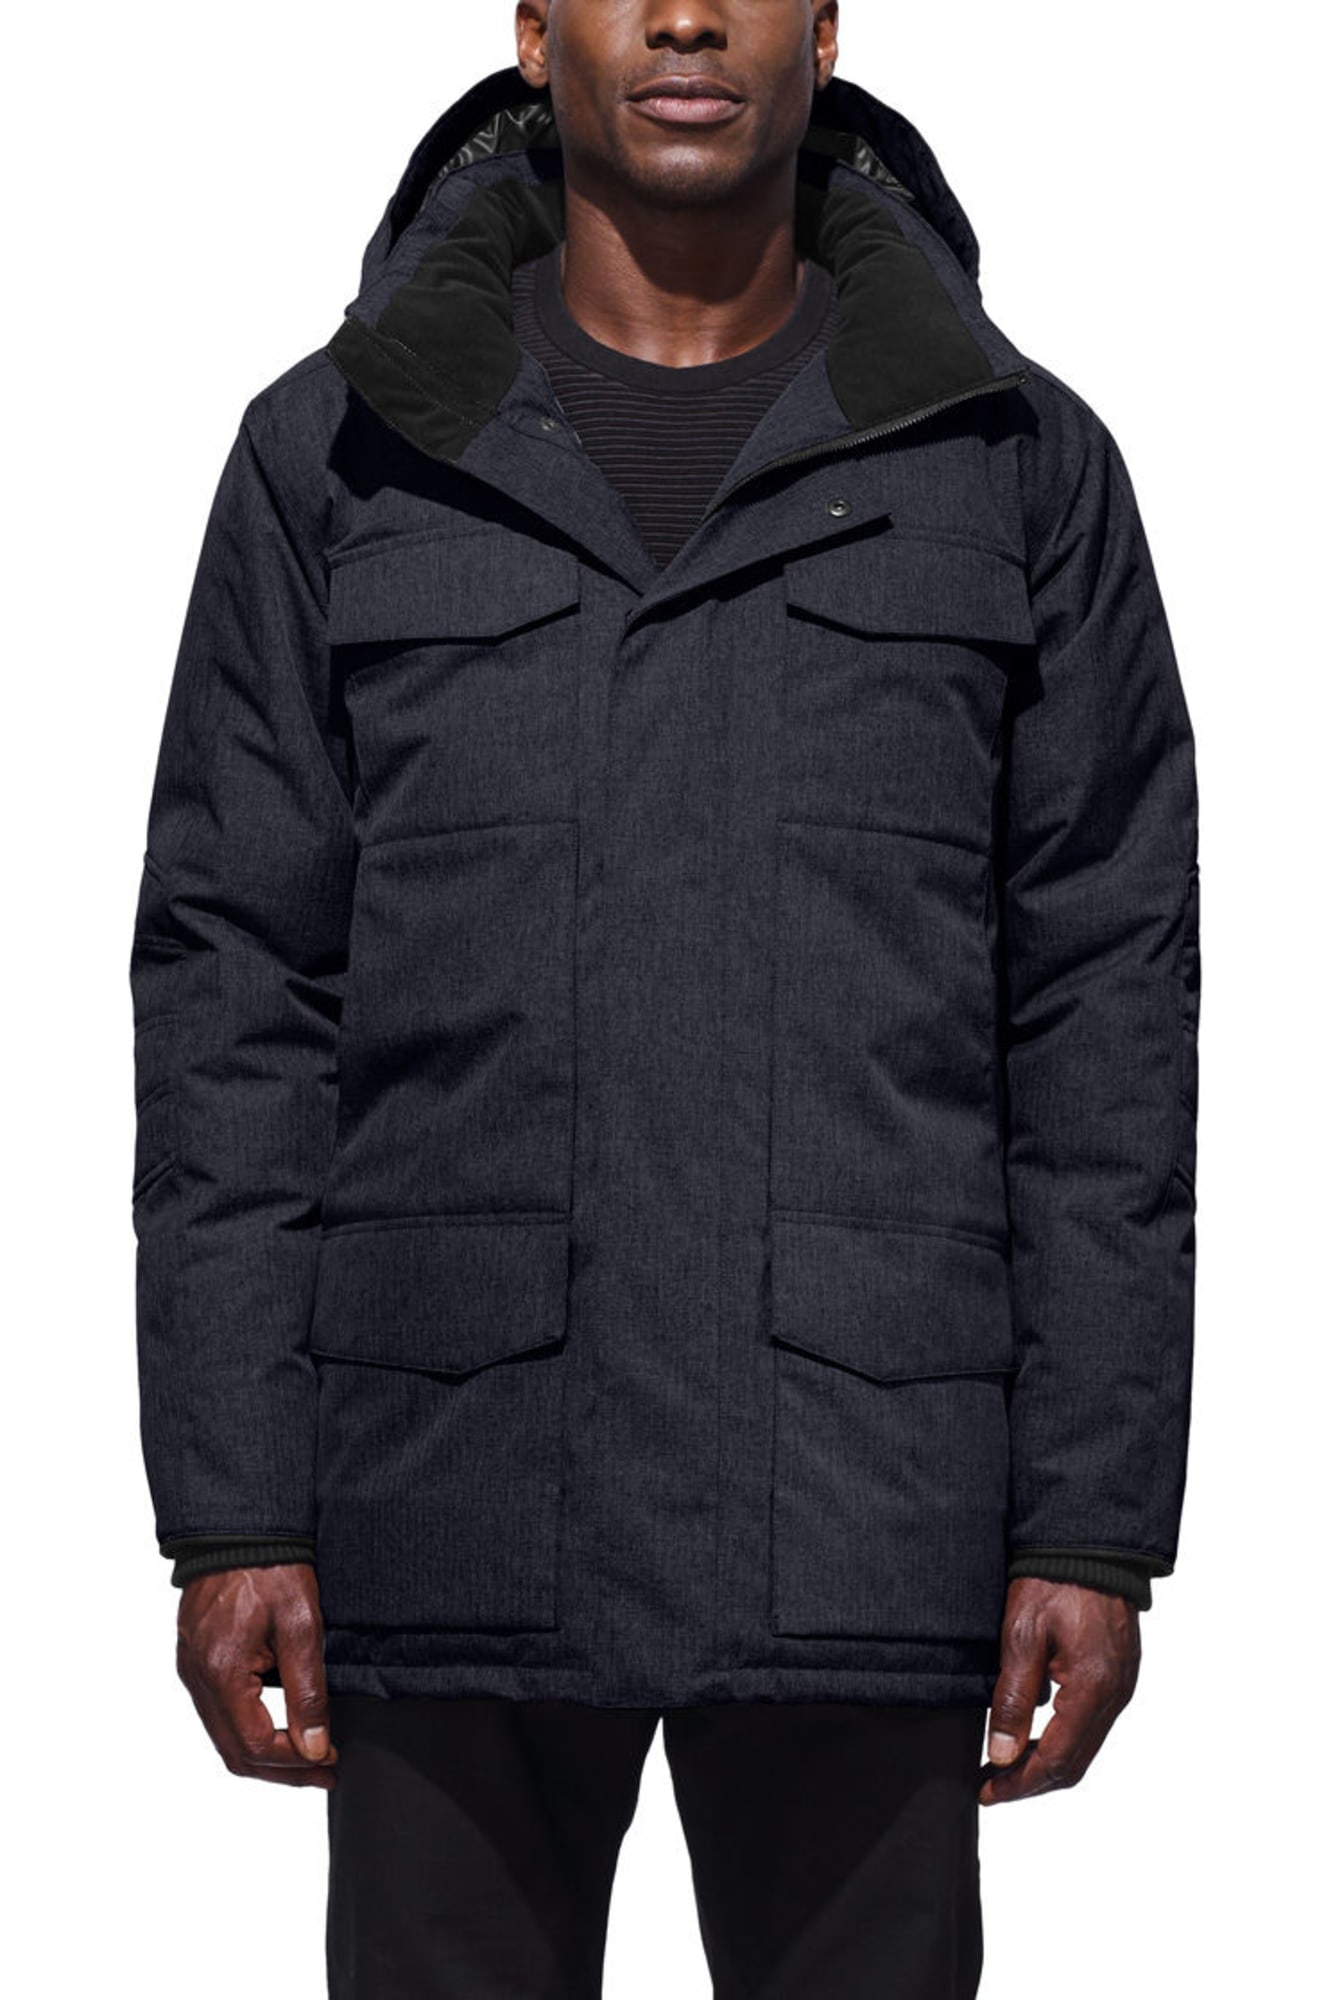 Windermere Coat Black Label | Canada Goose®